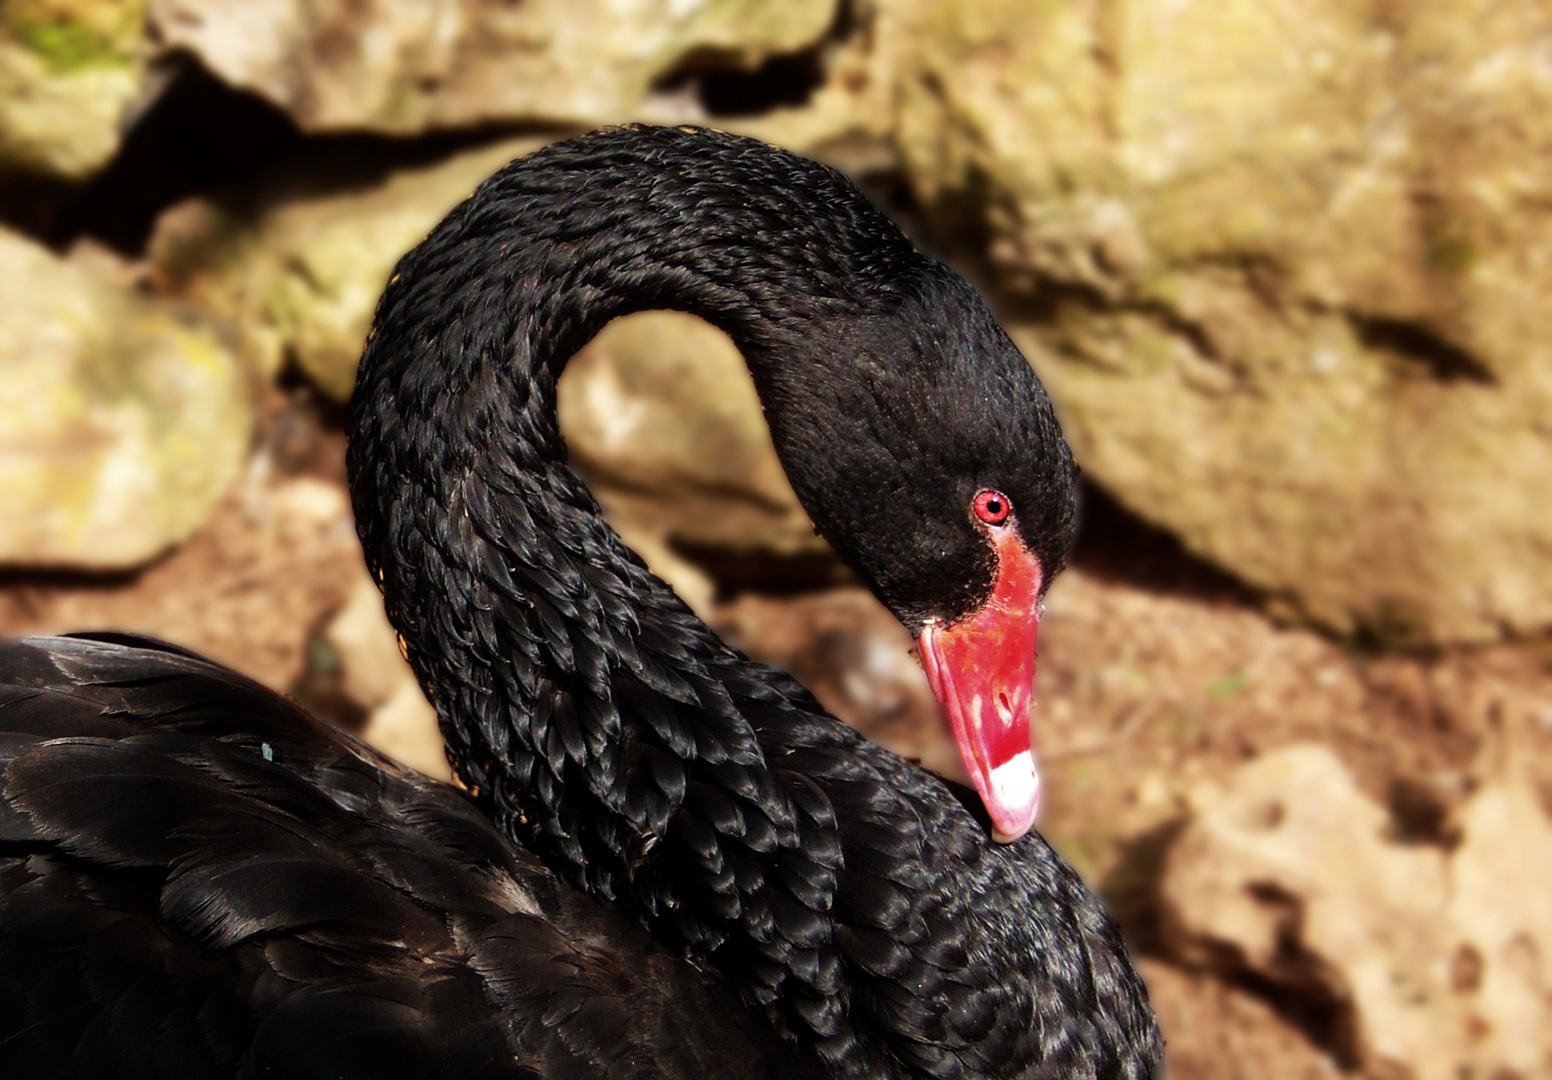 Cisne negro